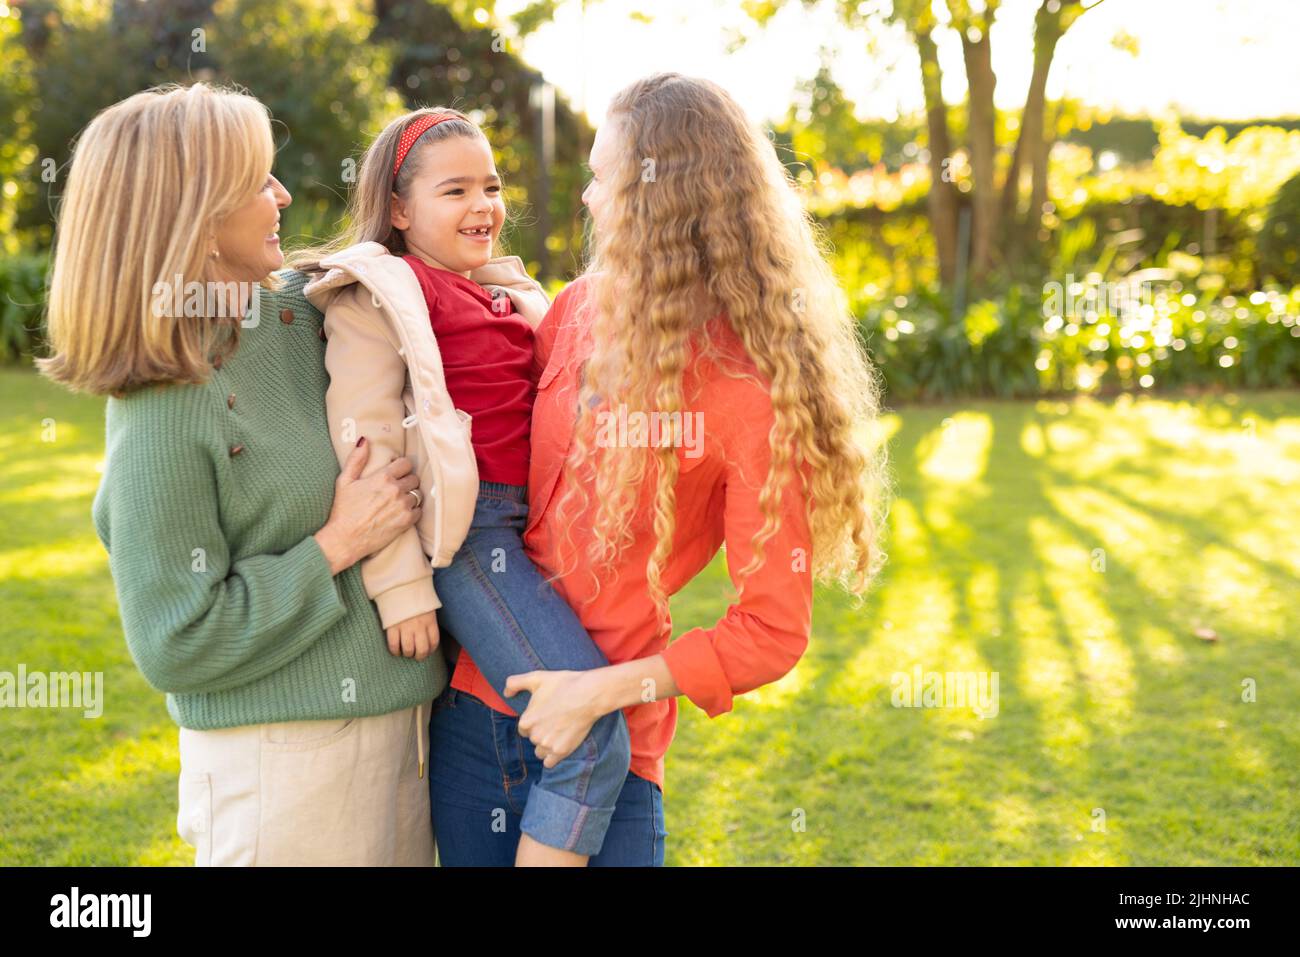 Image des femmes blanches de trois générations heureuses dans le jardin Banque D'Images